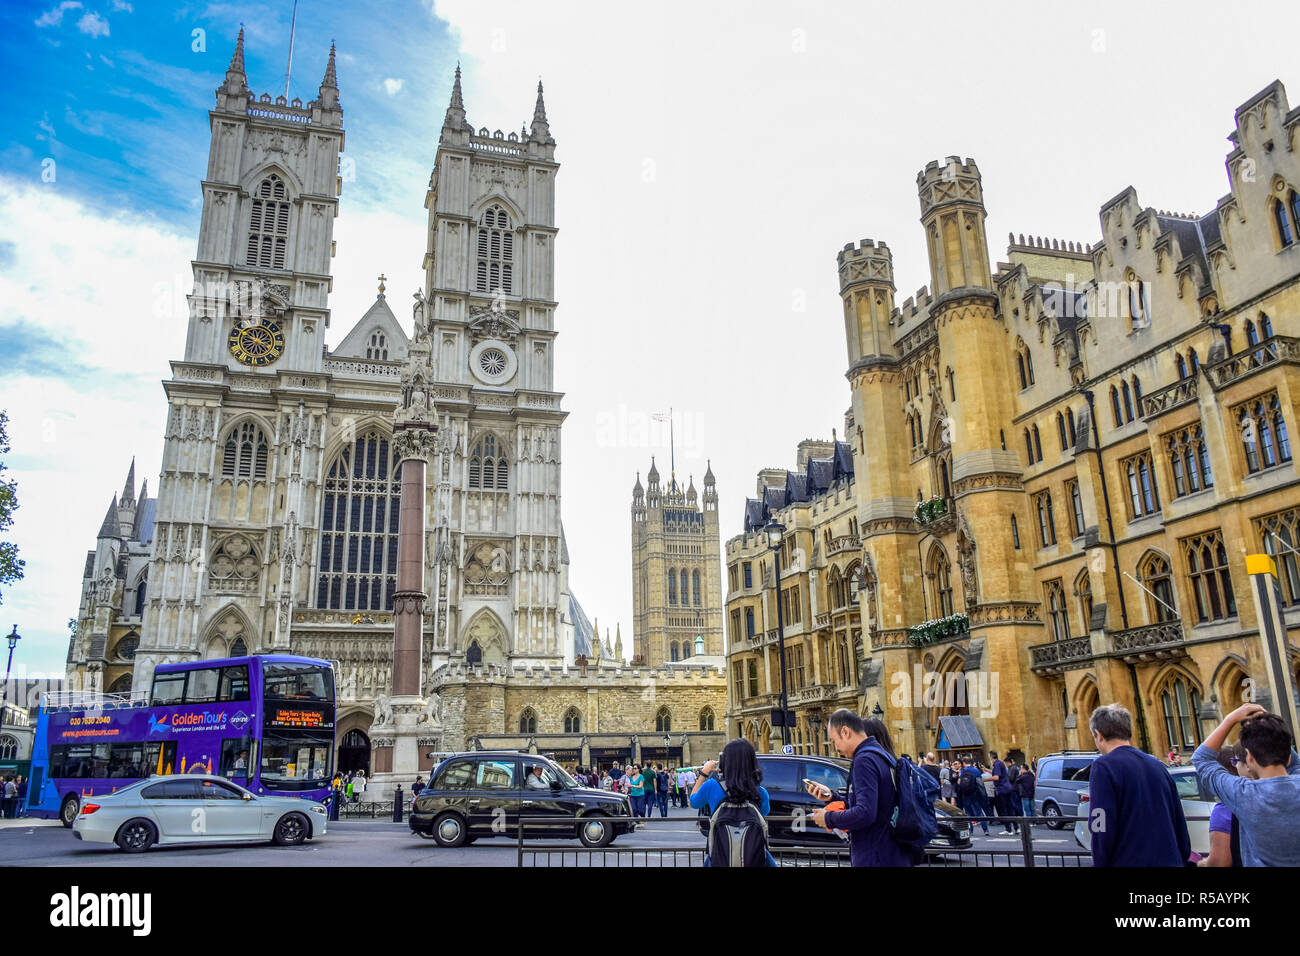 Route en face de l'abbaye de Westminster plein de voitures, d'autobus et les touristes dans la ville de Westminster, Londres, Angleterre, Royaume-Uni Banque D'Images